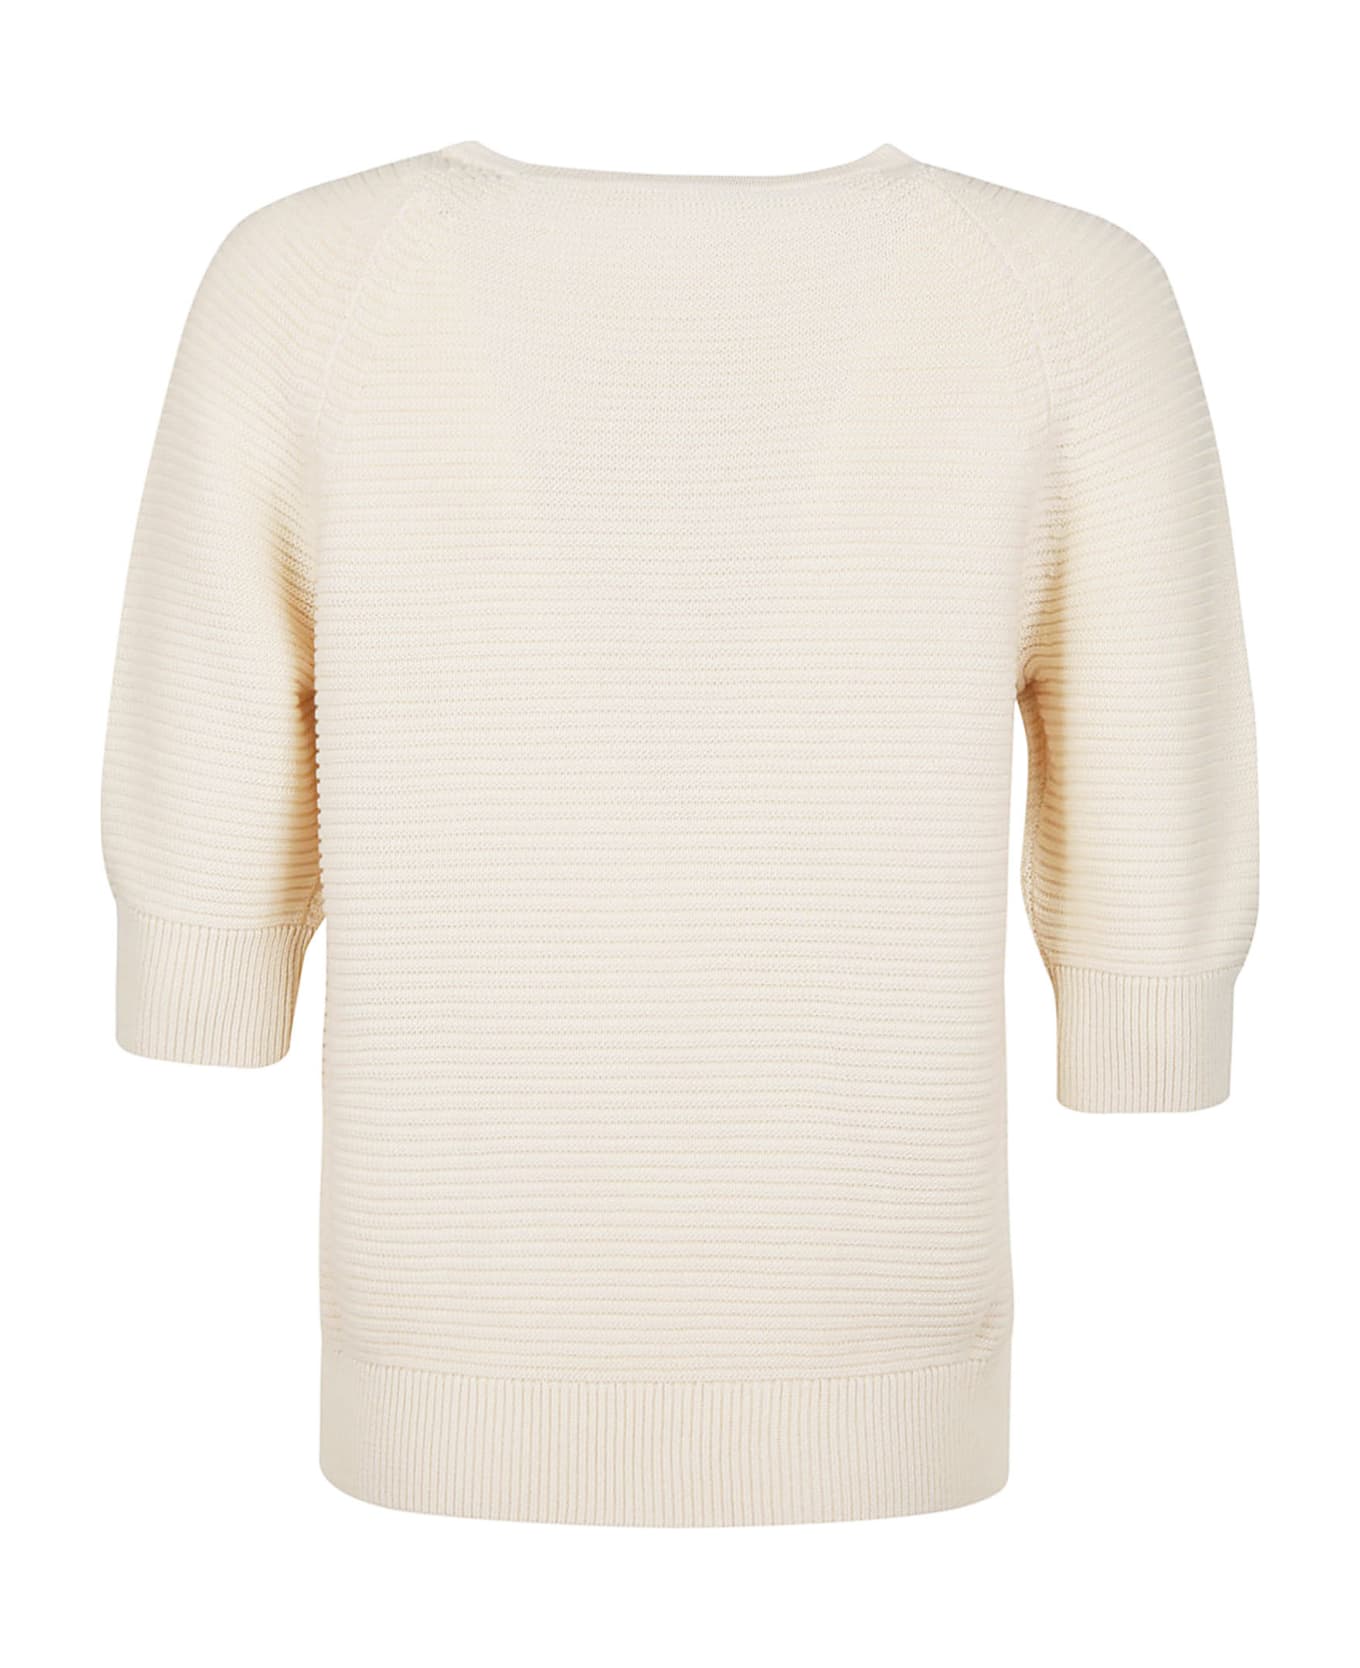 Max Mara Odilia Sweater - 0 Bianco